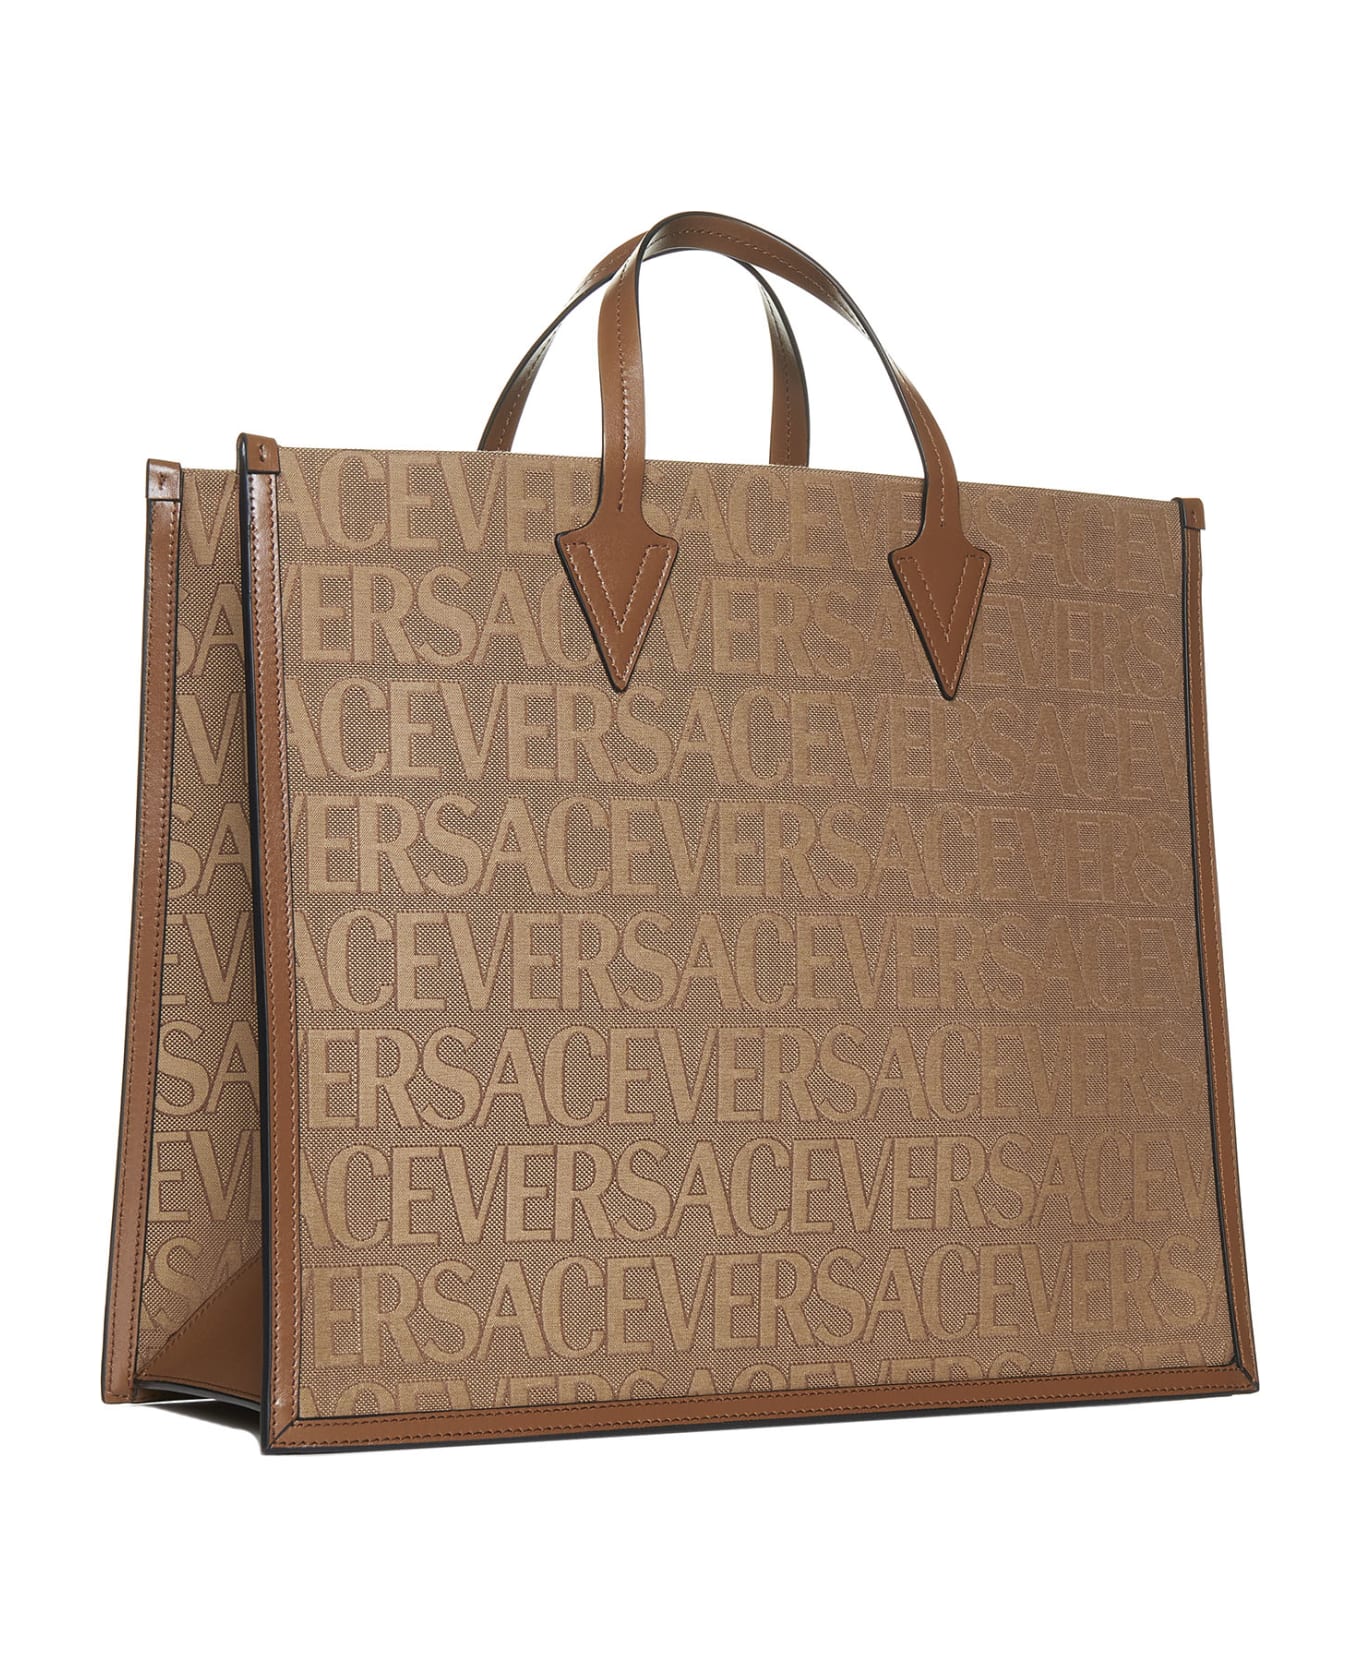 Versace 'versace Allover' Shopper Bag - Brown トートバッグ